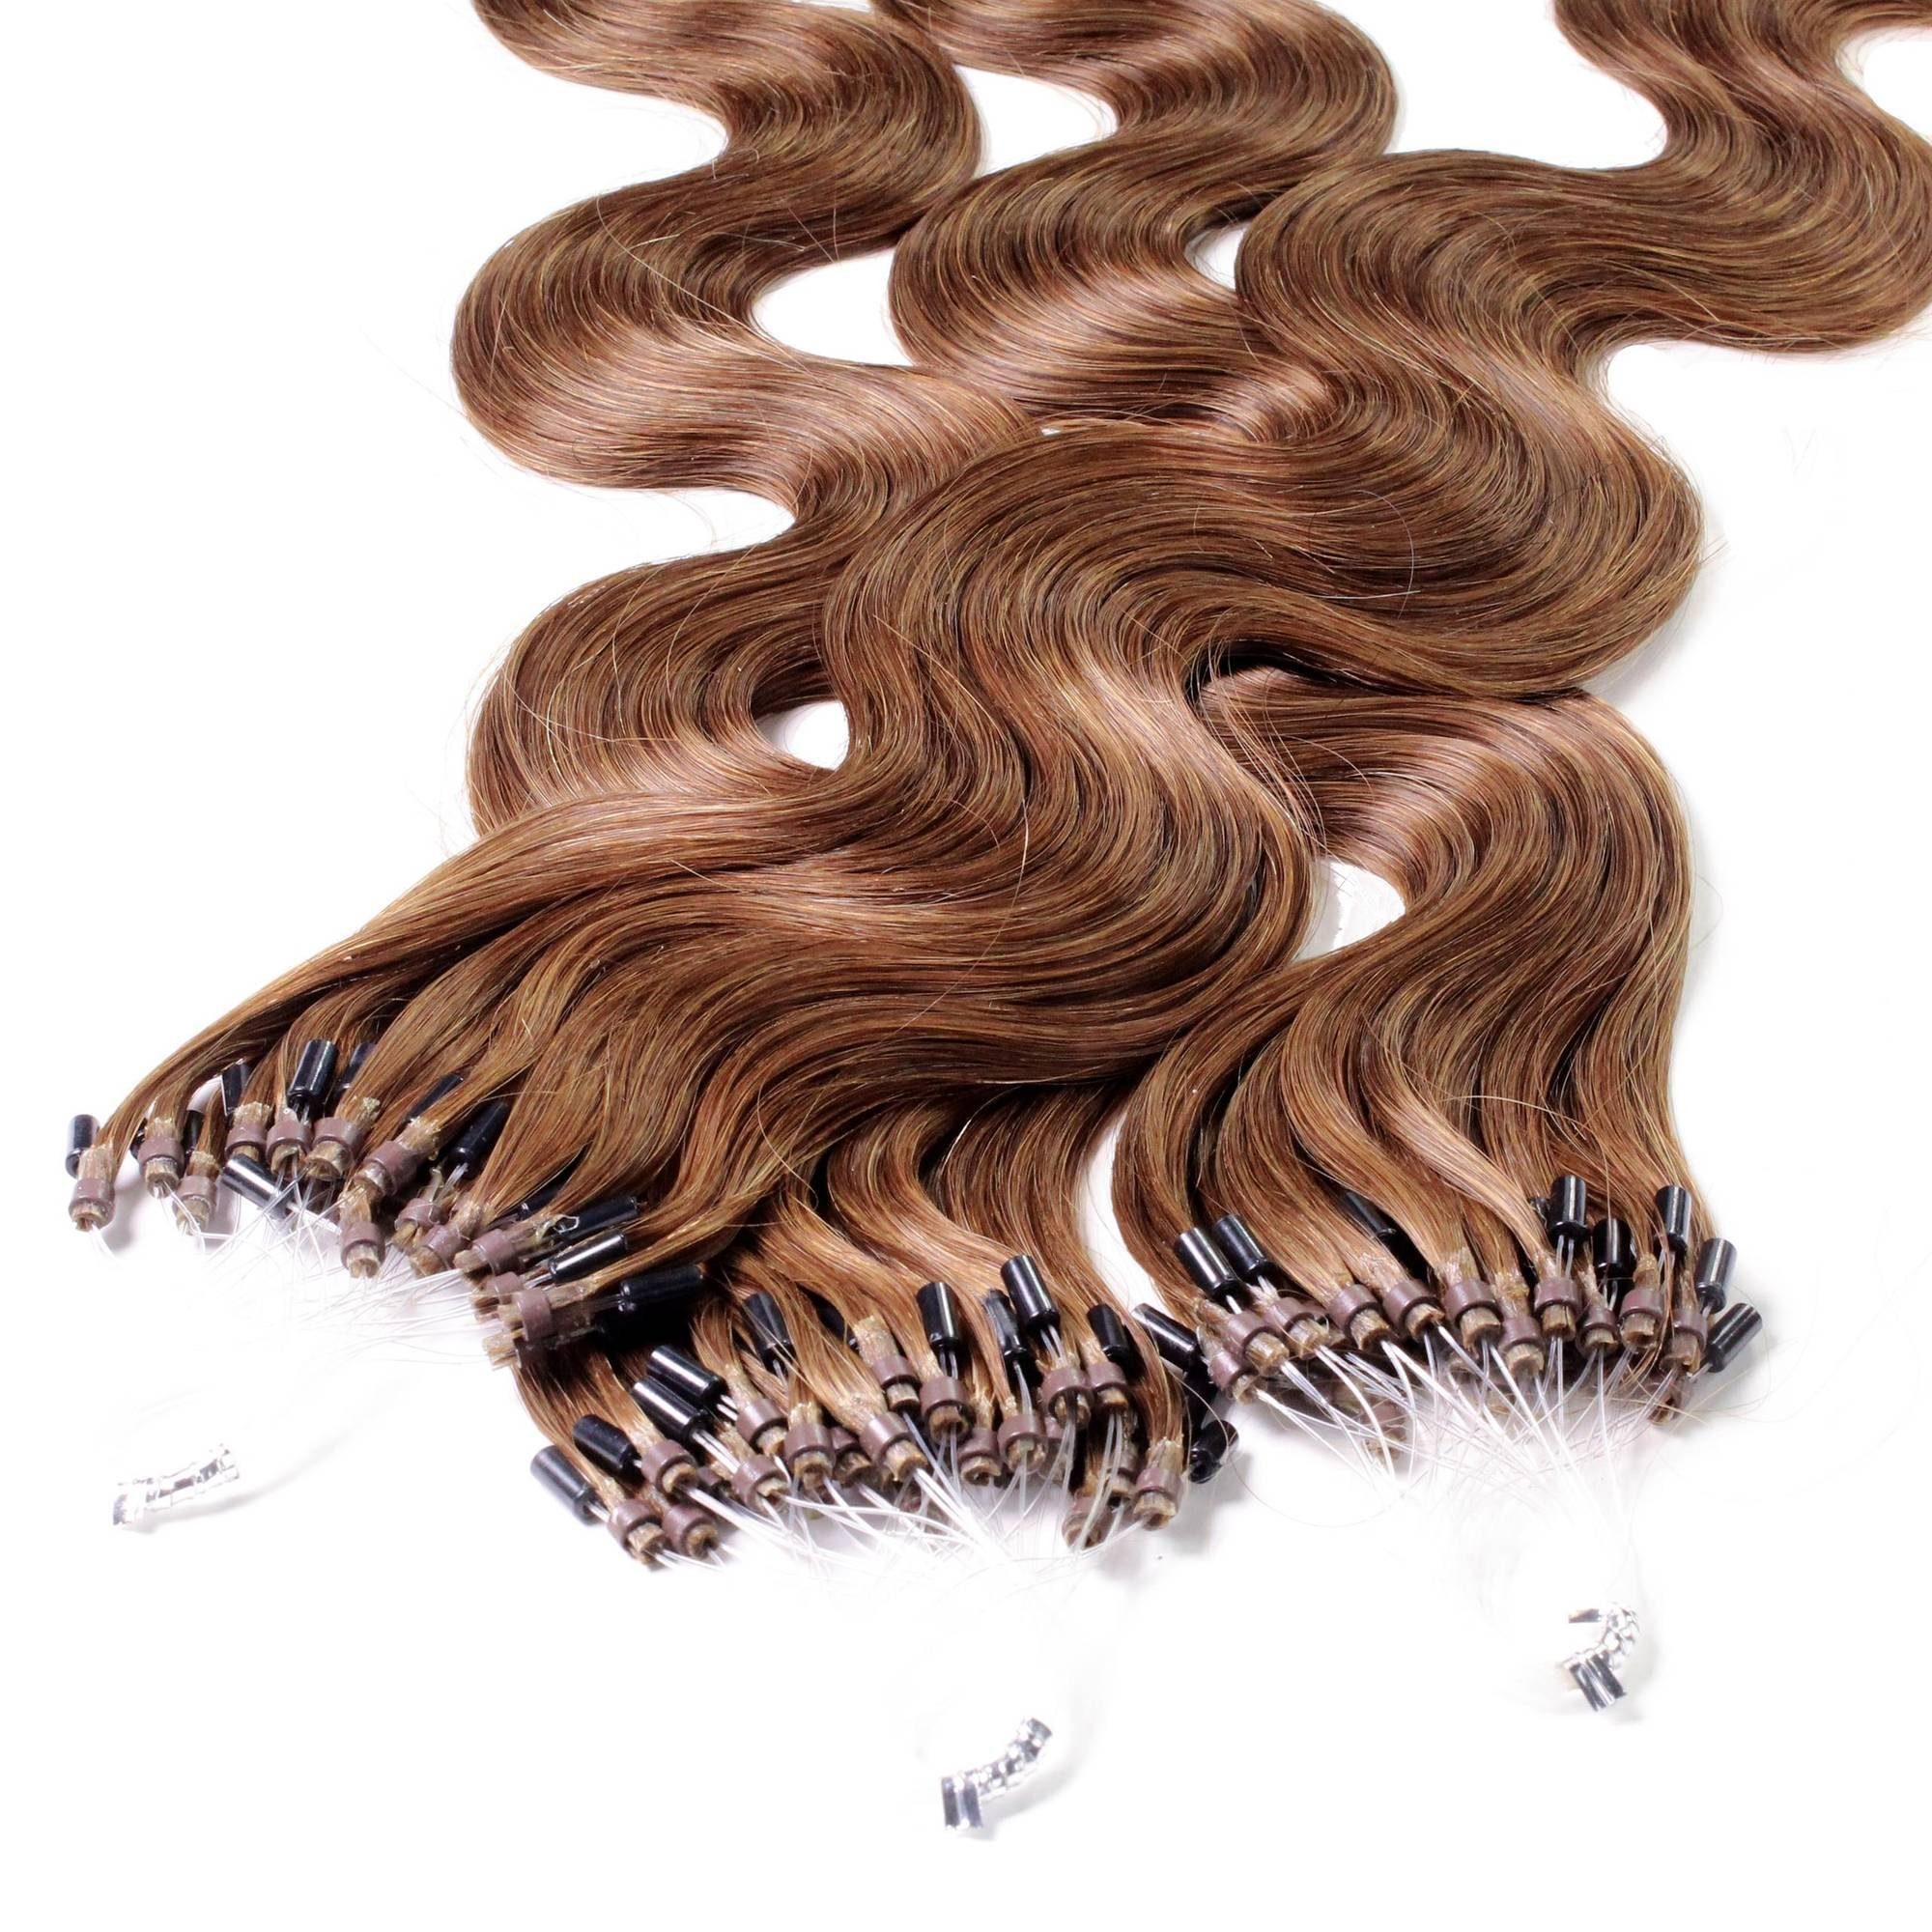 gewellt 0.5g Microring Natur-Gold hair2heart #8/03 Loops - 50cm Hellblond Echthaar-Extension